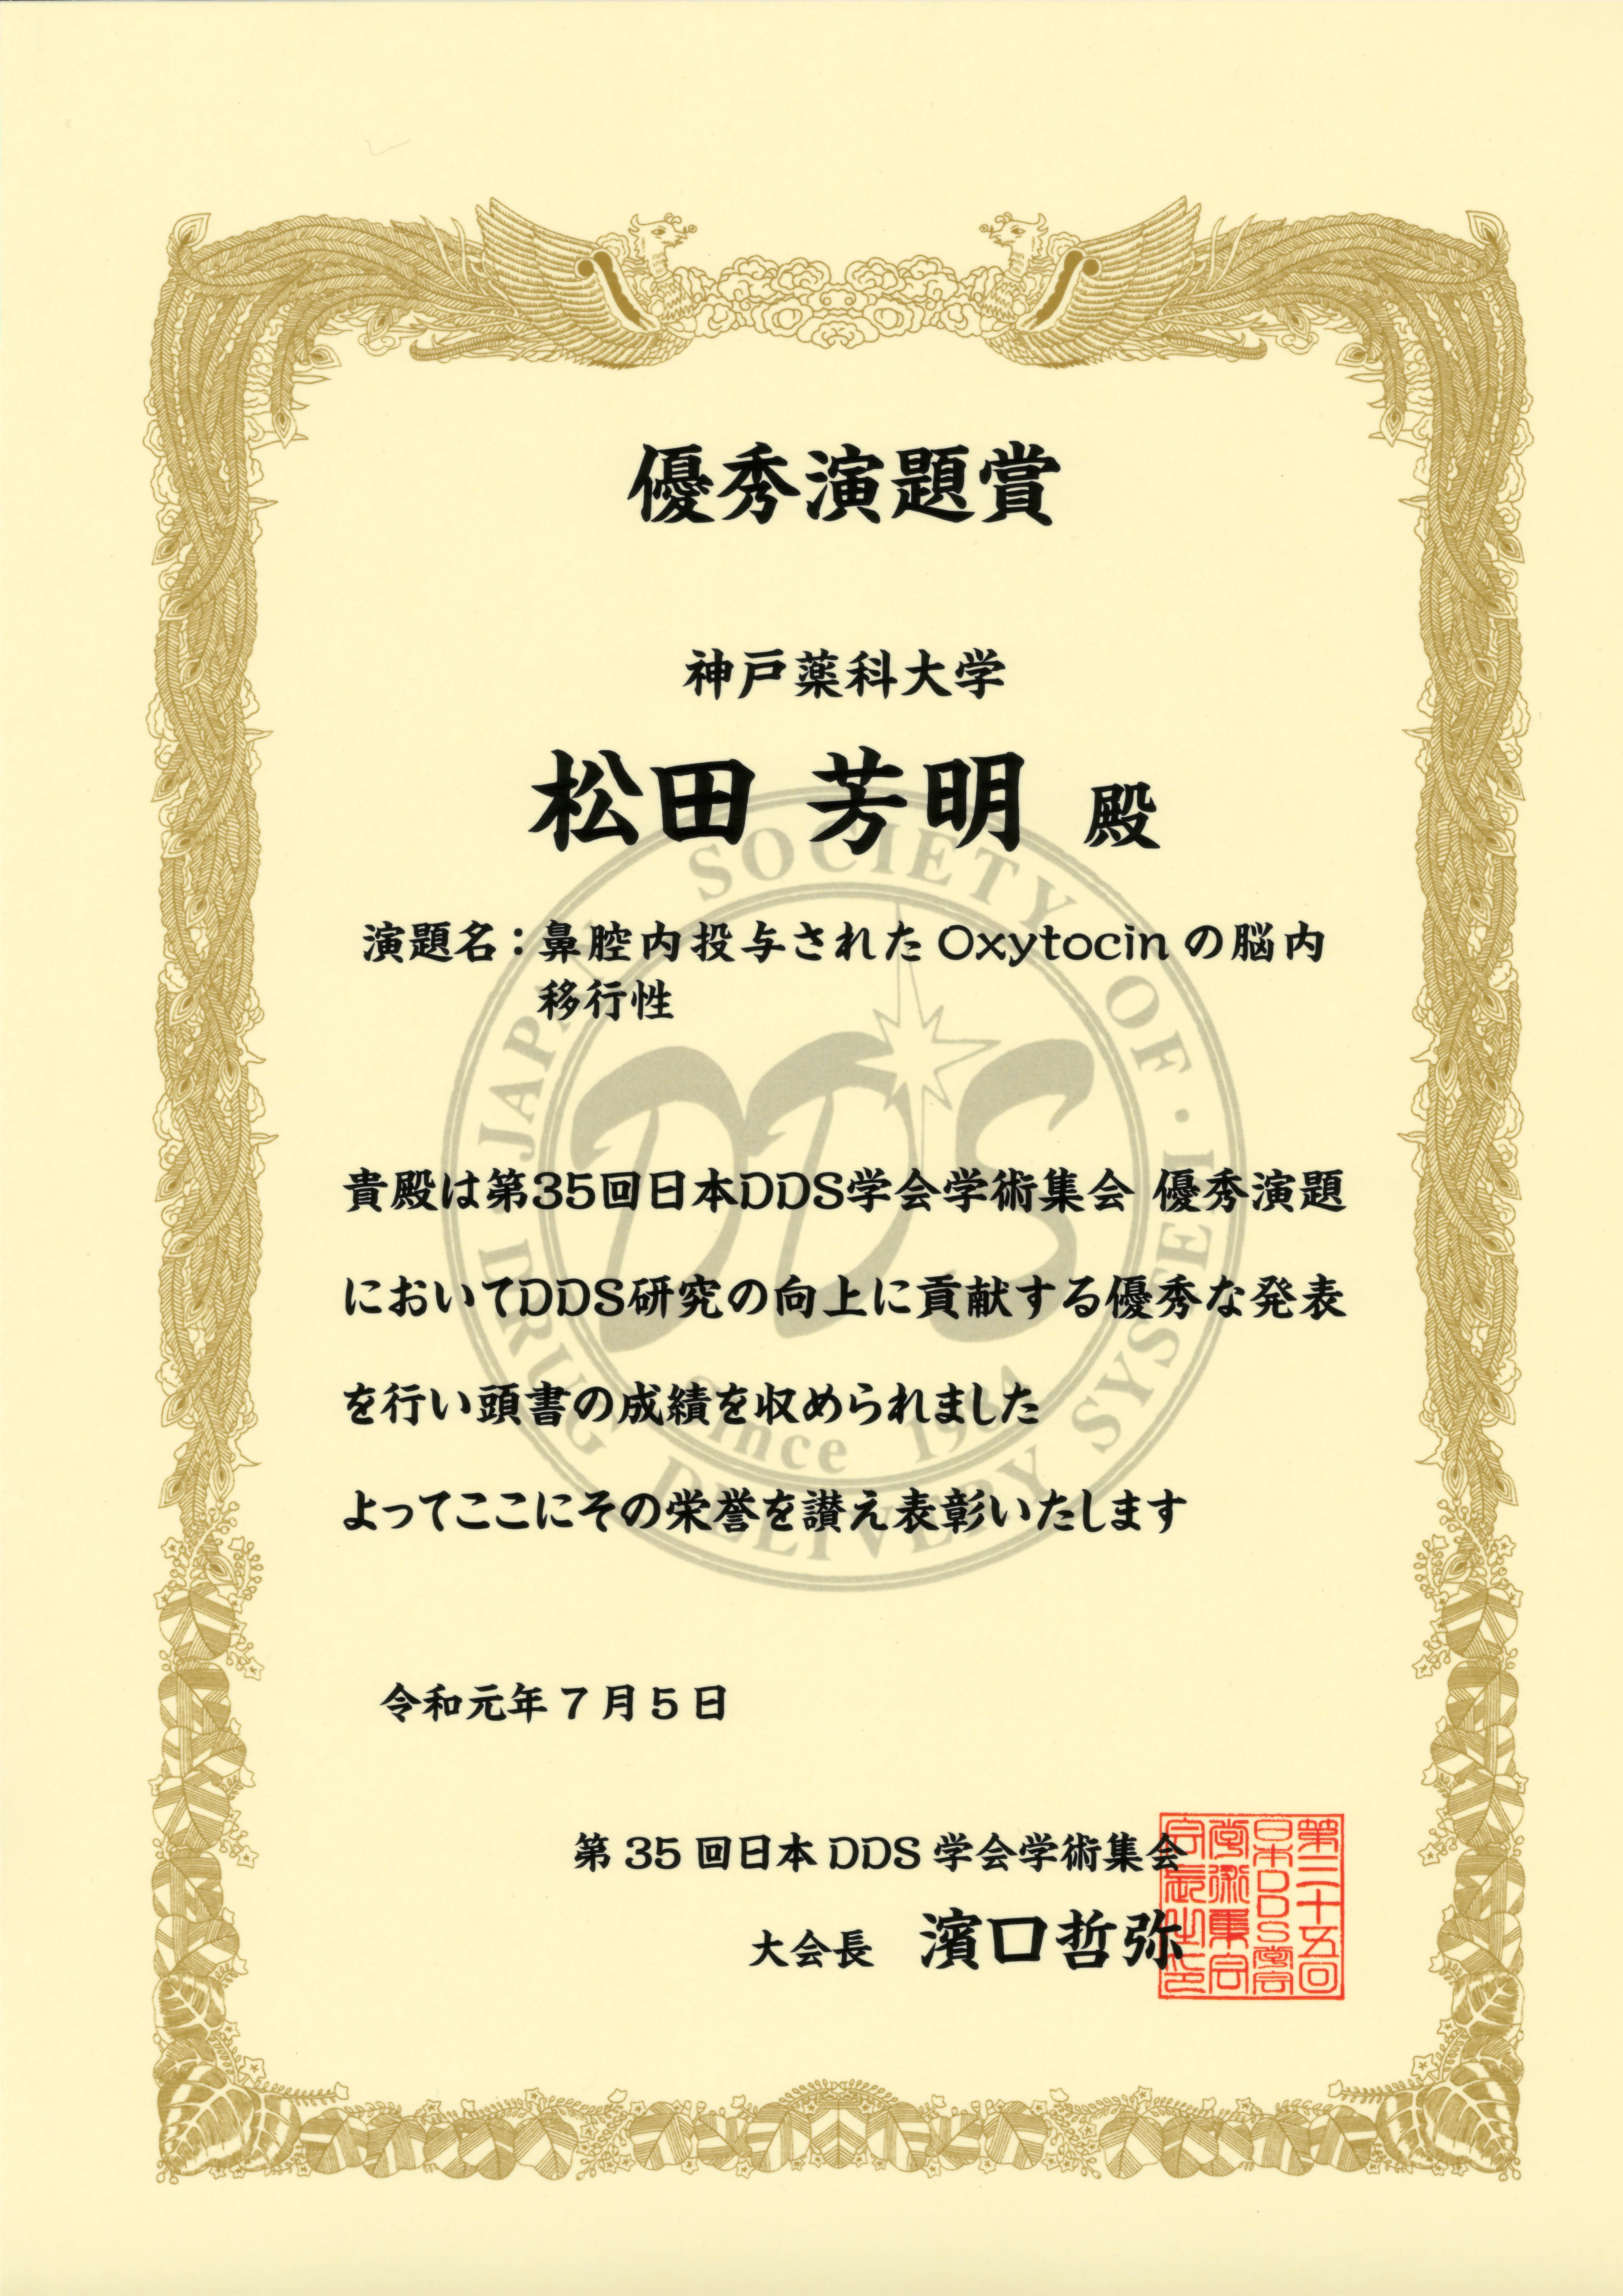 記事 第 35 会日本 DDS 学会学術集会で松田芳明くんが優秀演題賞を受賞しました。のアイキャッチ画像